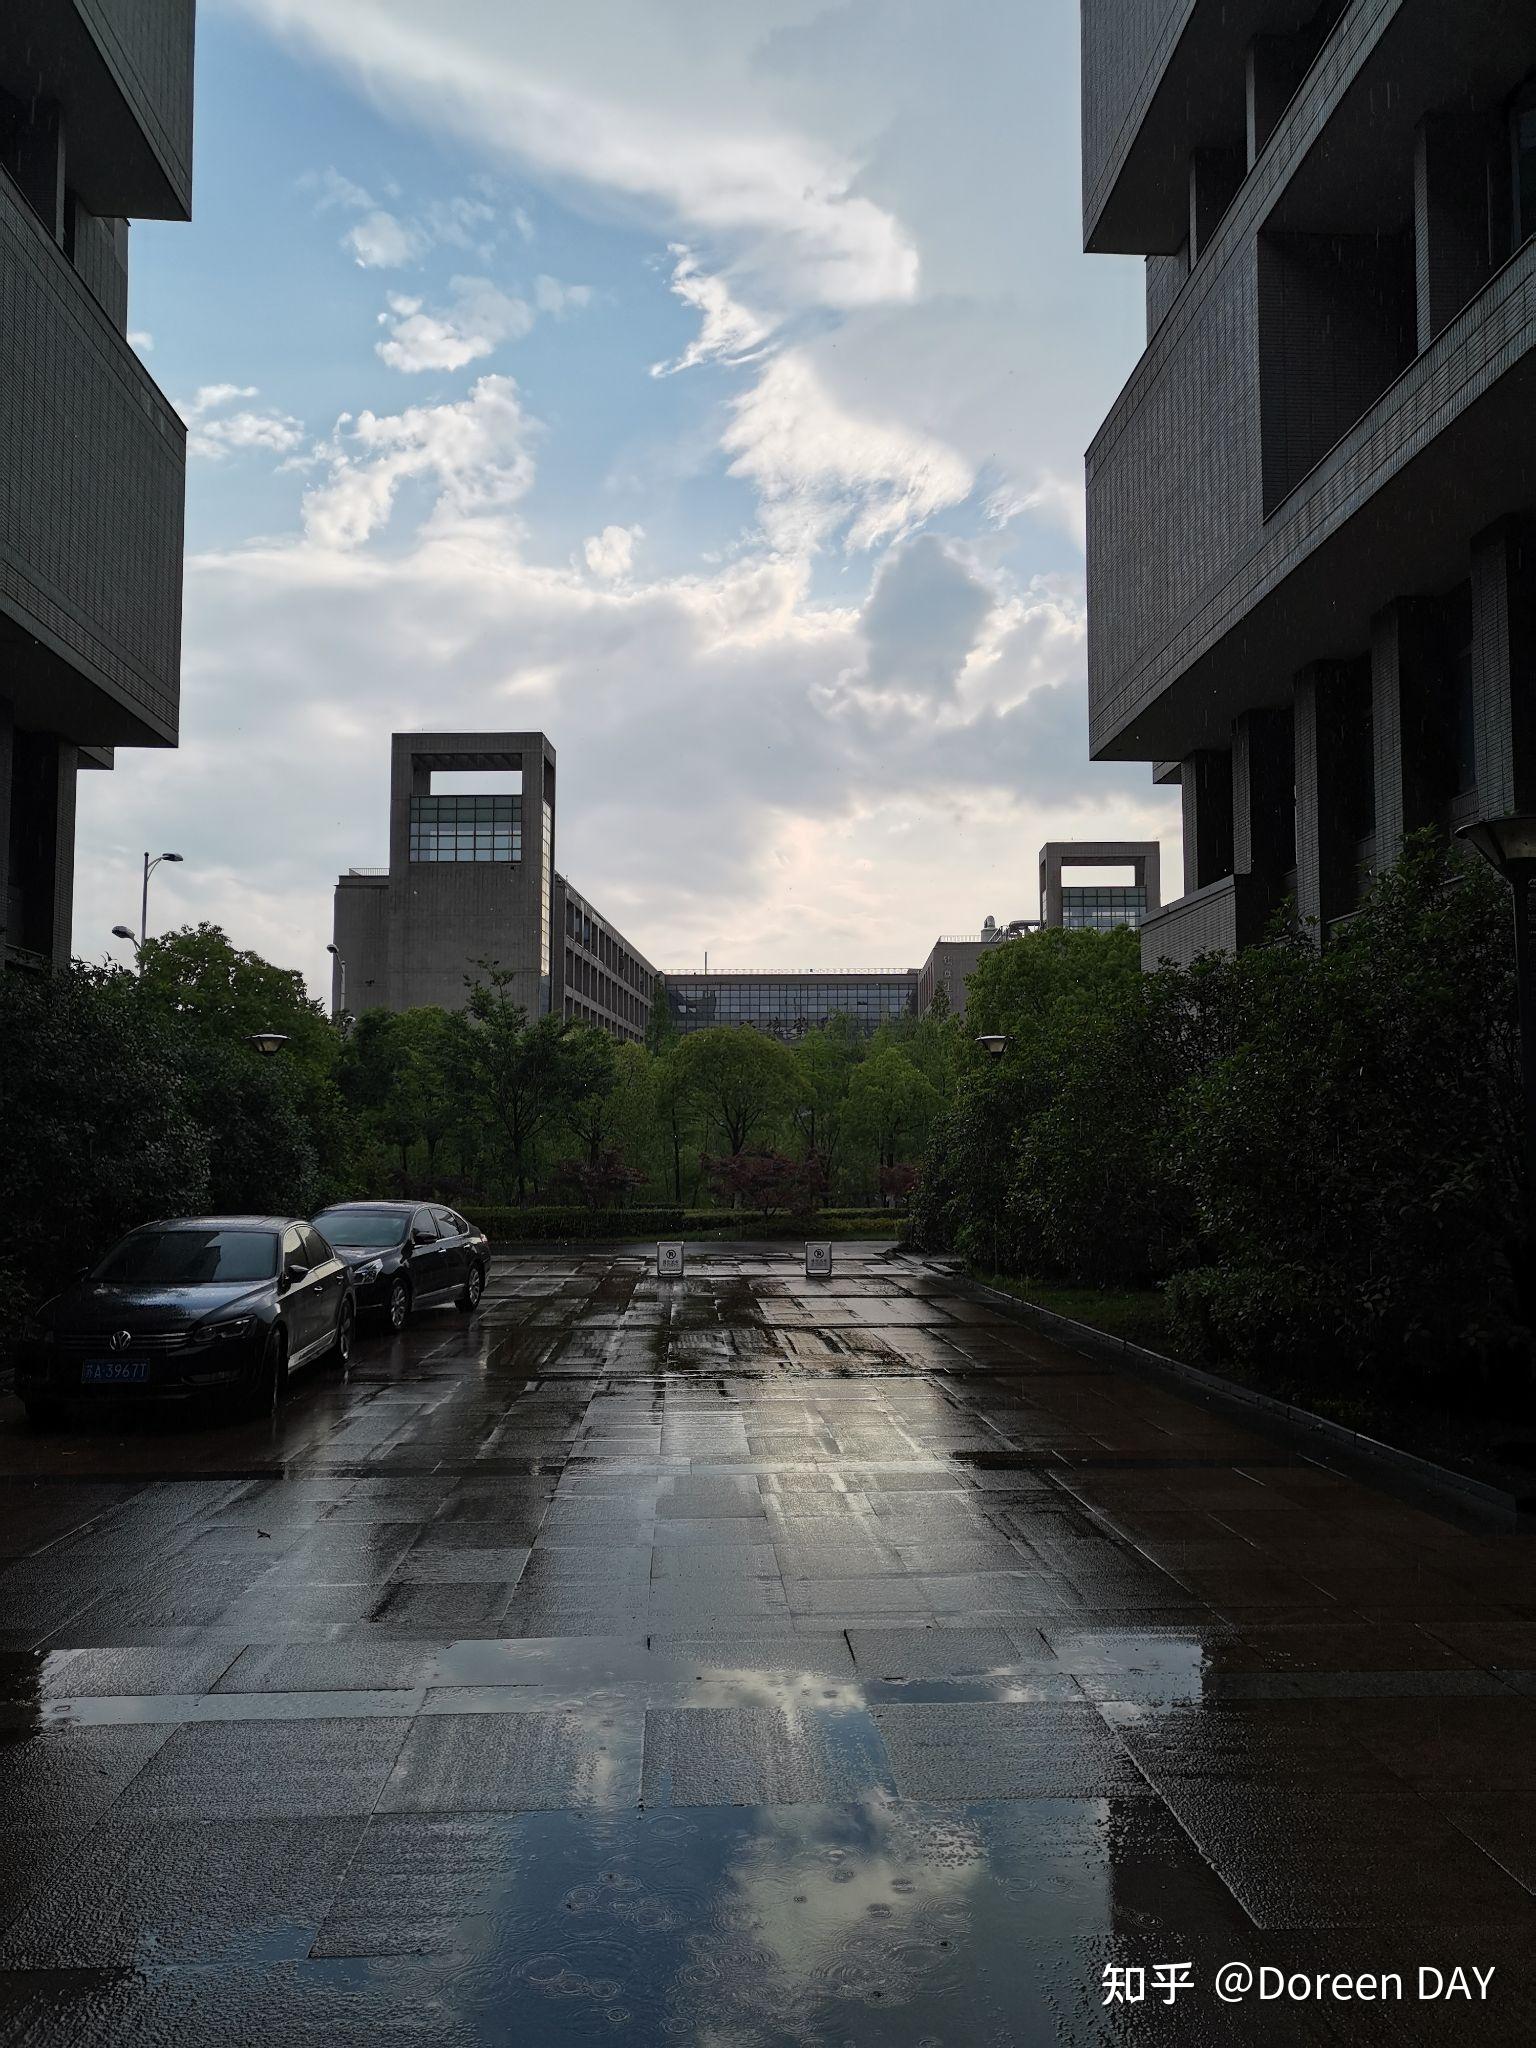 想激励一下自己有没有知友能提供南京大学照片啊